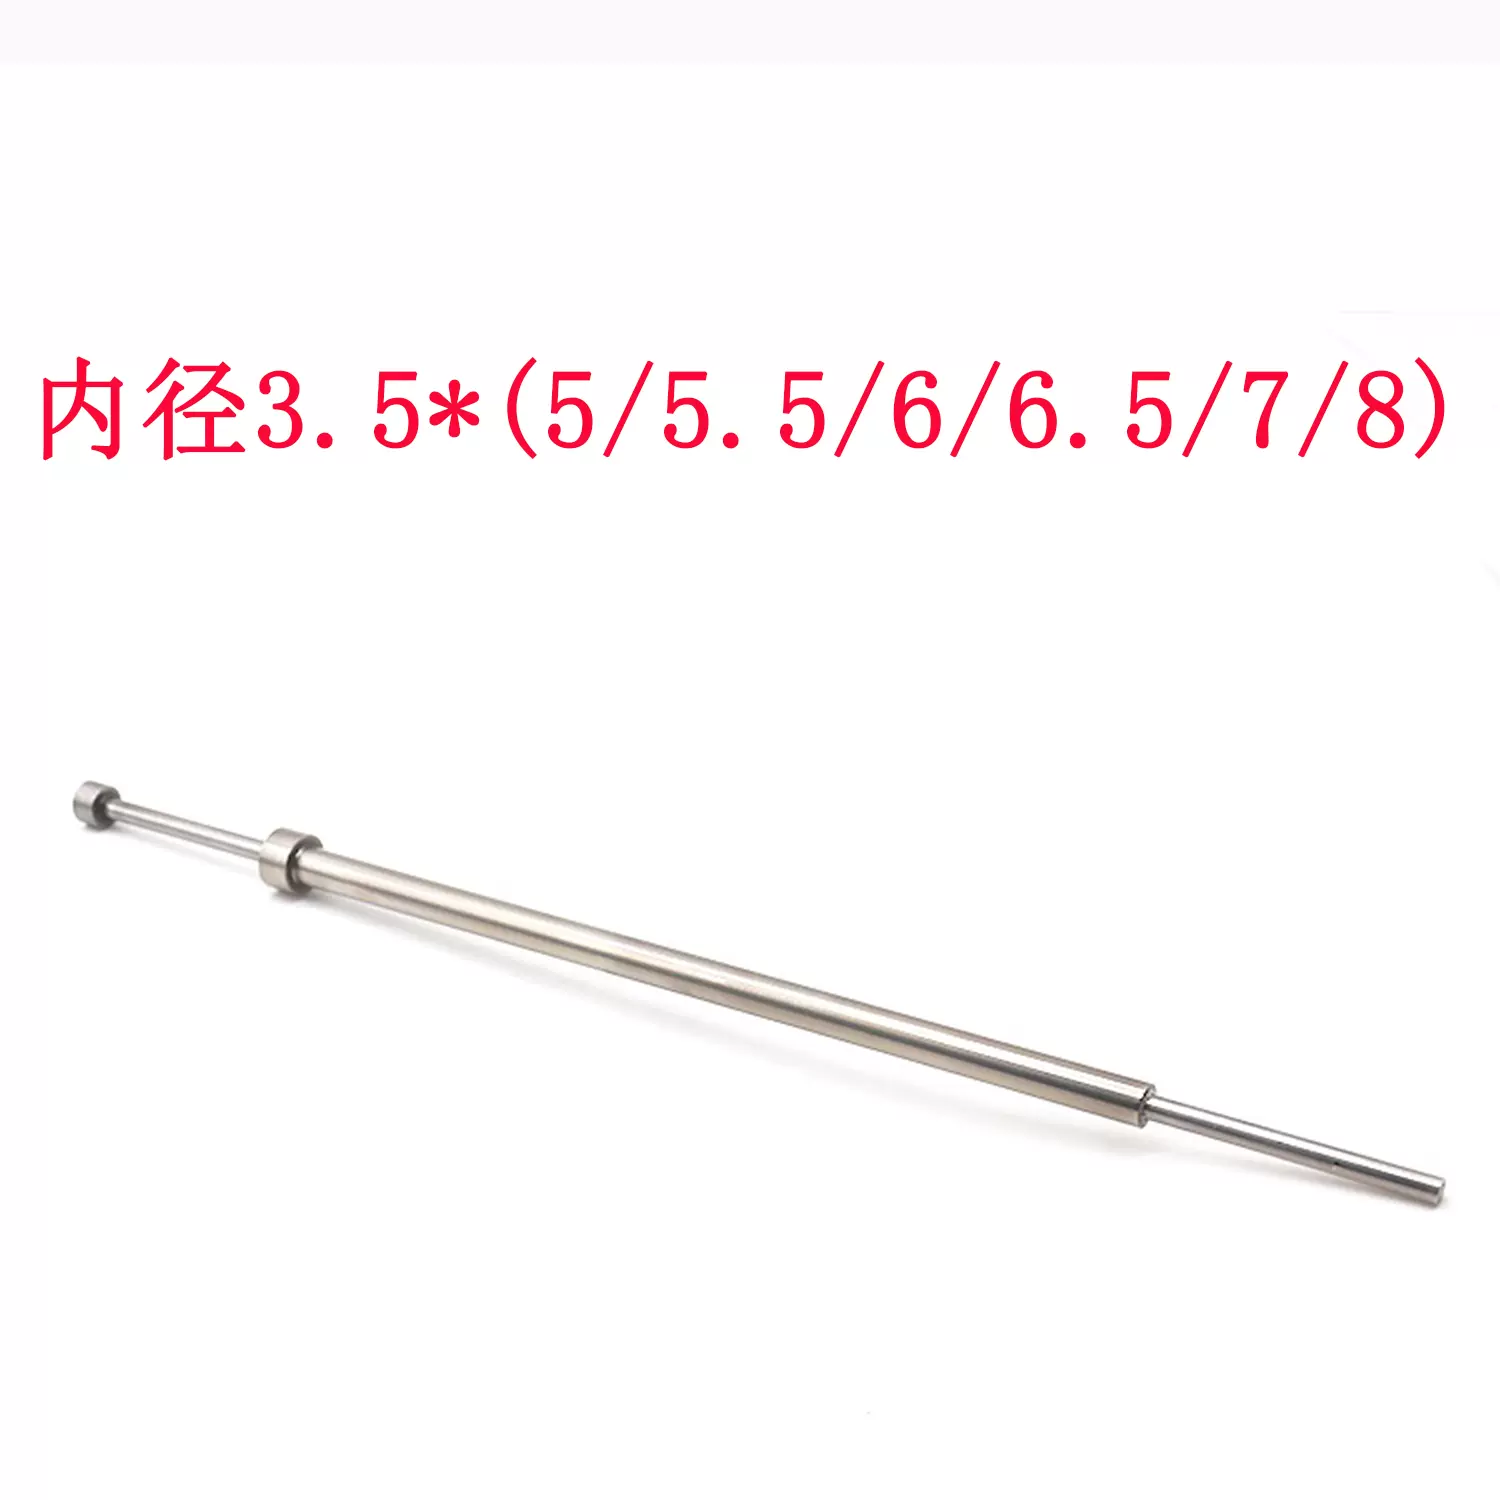 进口SKD 61模具司筒针FDAC推管空芯顶针顶管内径2.8外径5/5.5-Taobao 